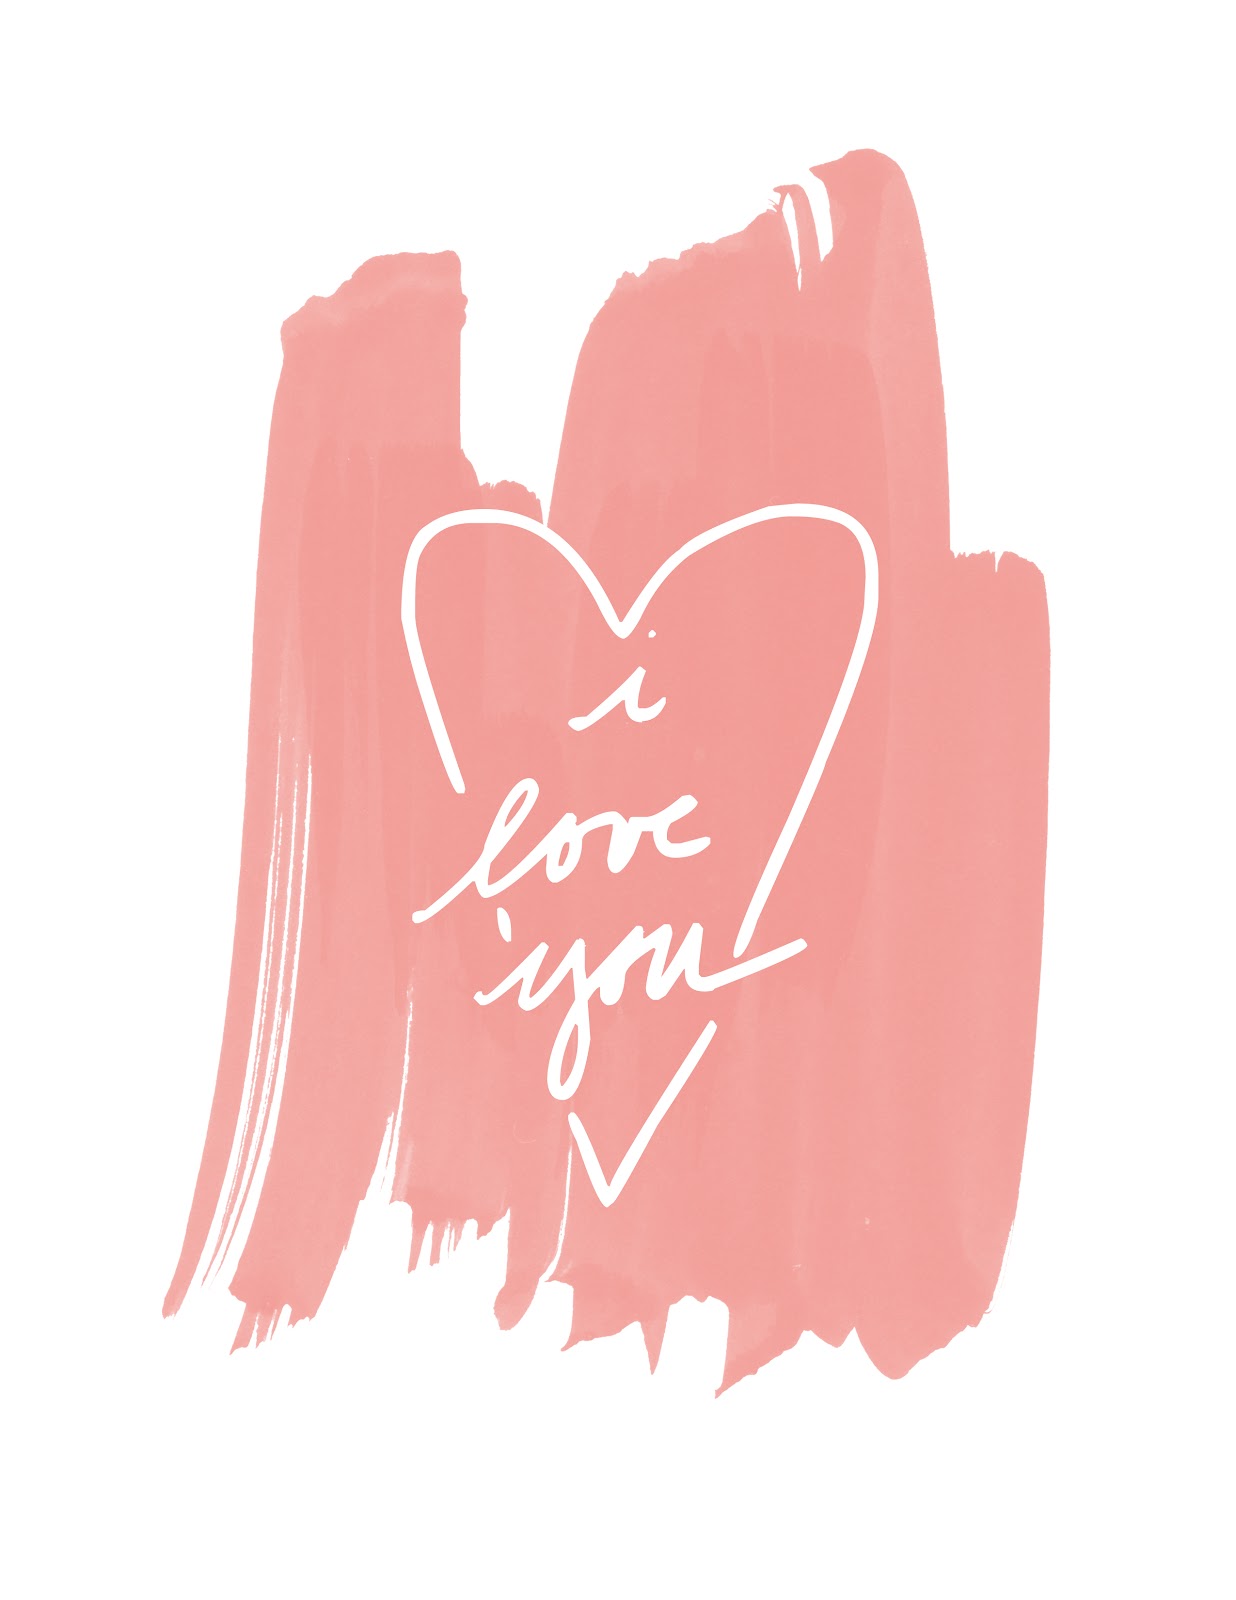 Printable: I Love You